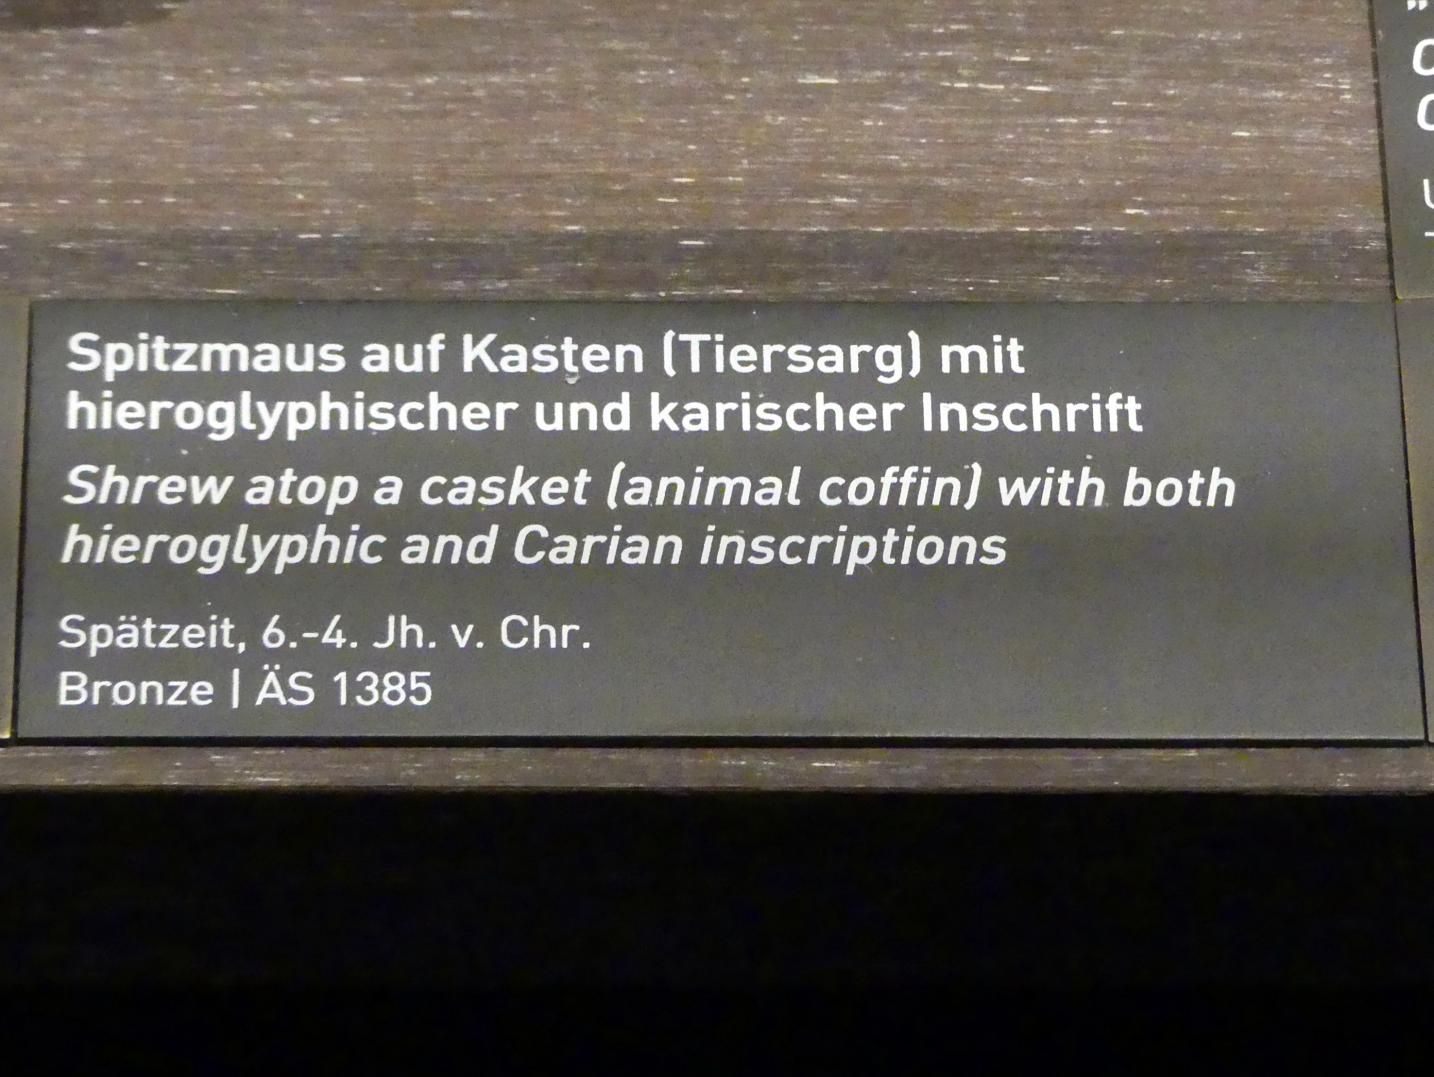 Spitzmaus auf Kasten (Tiersarg) mit hieroglyphischer und karischer Inschrift, Spätzeit, 360 - 342 v. Chr., 600 - 300 v. Chr., Bild 2/2